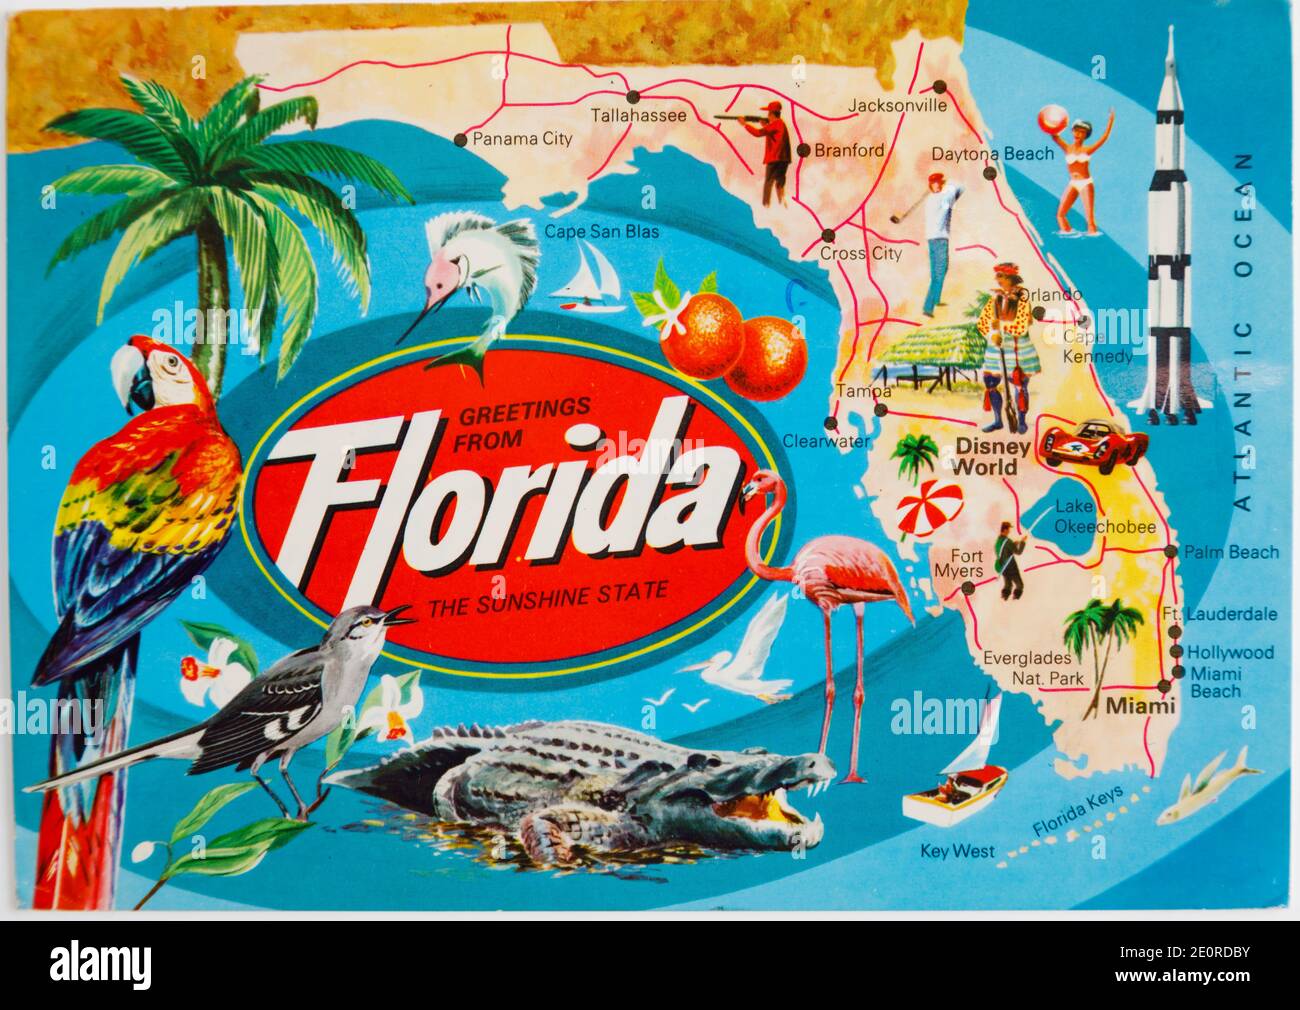 Alte farbige Postkarte mit einer Touristenkarte Florida, gesendet im Jahr 1988. Vereinigte Staaten von Amerika. Stockfoto